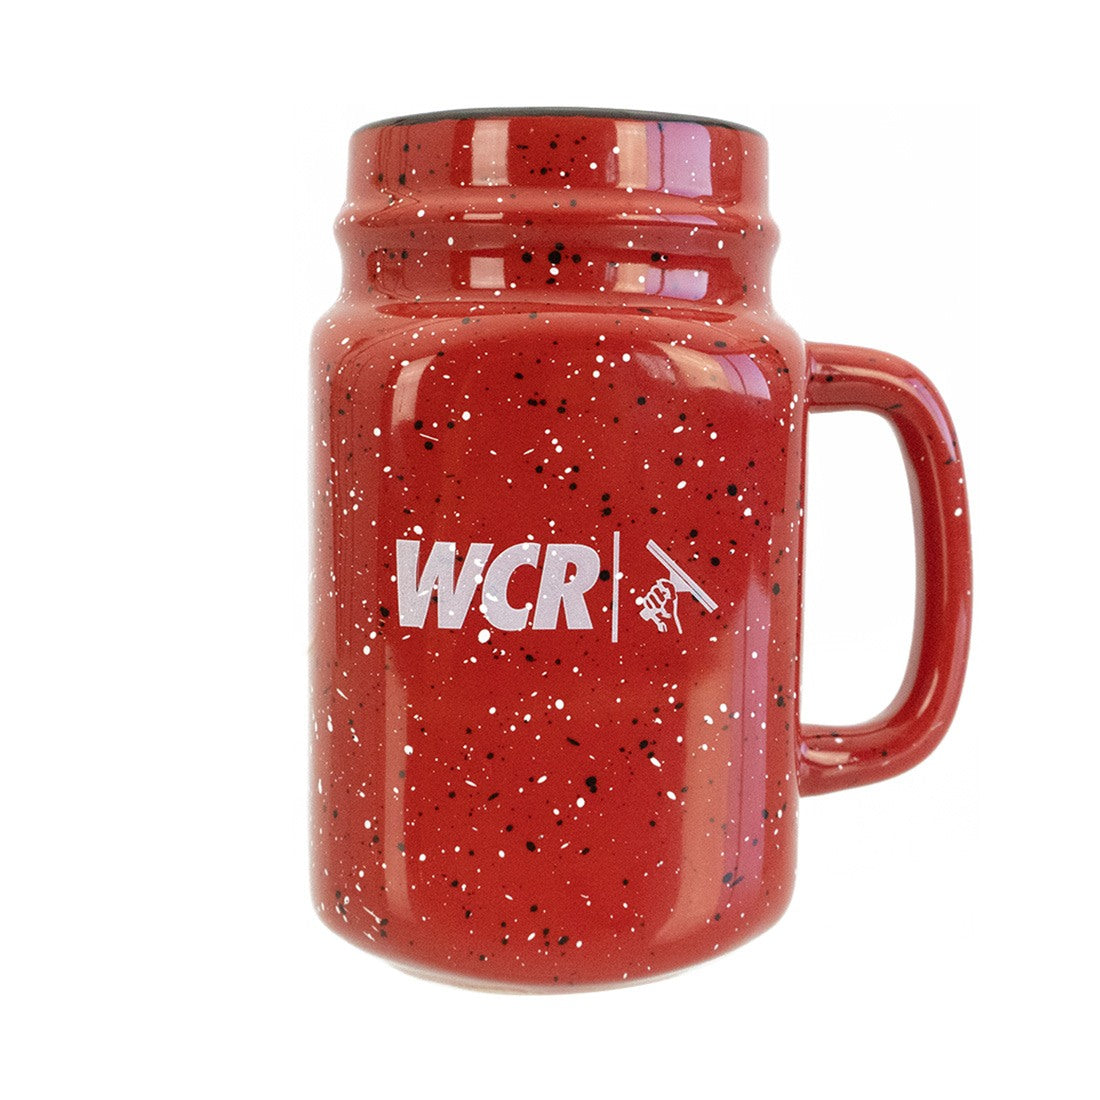 https://windowcleaner.com/cdn/shop/products/0005_wcr-ceramic-mason-jar-mug-first_copy_2_1.jpg?v=1667977436&width=1445